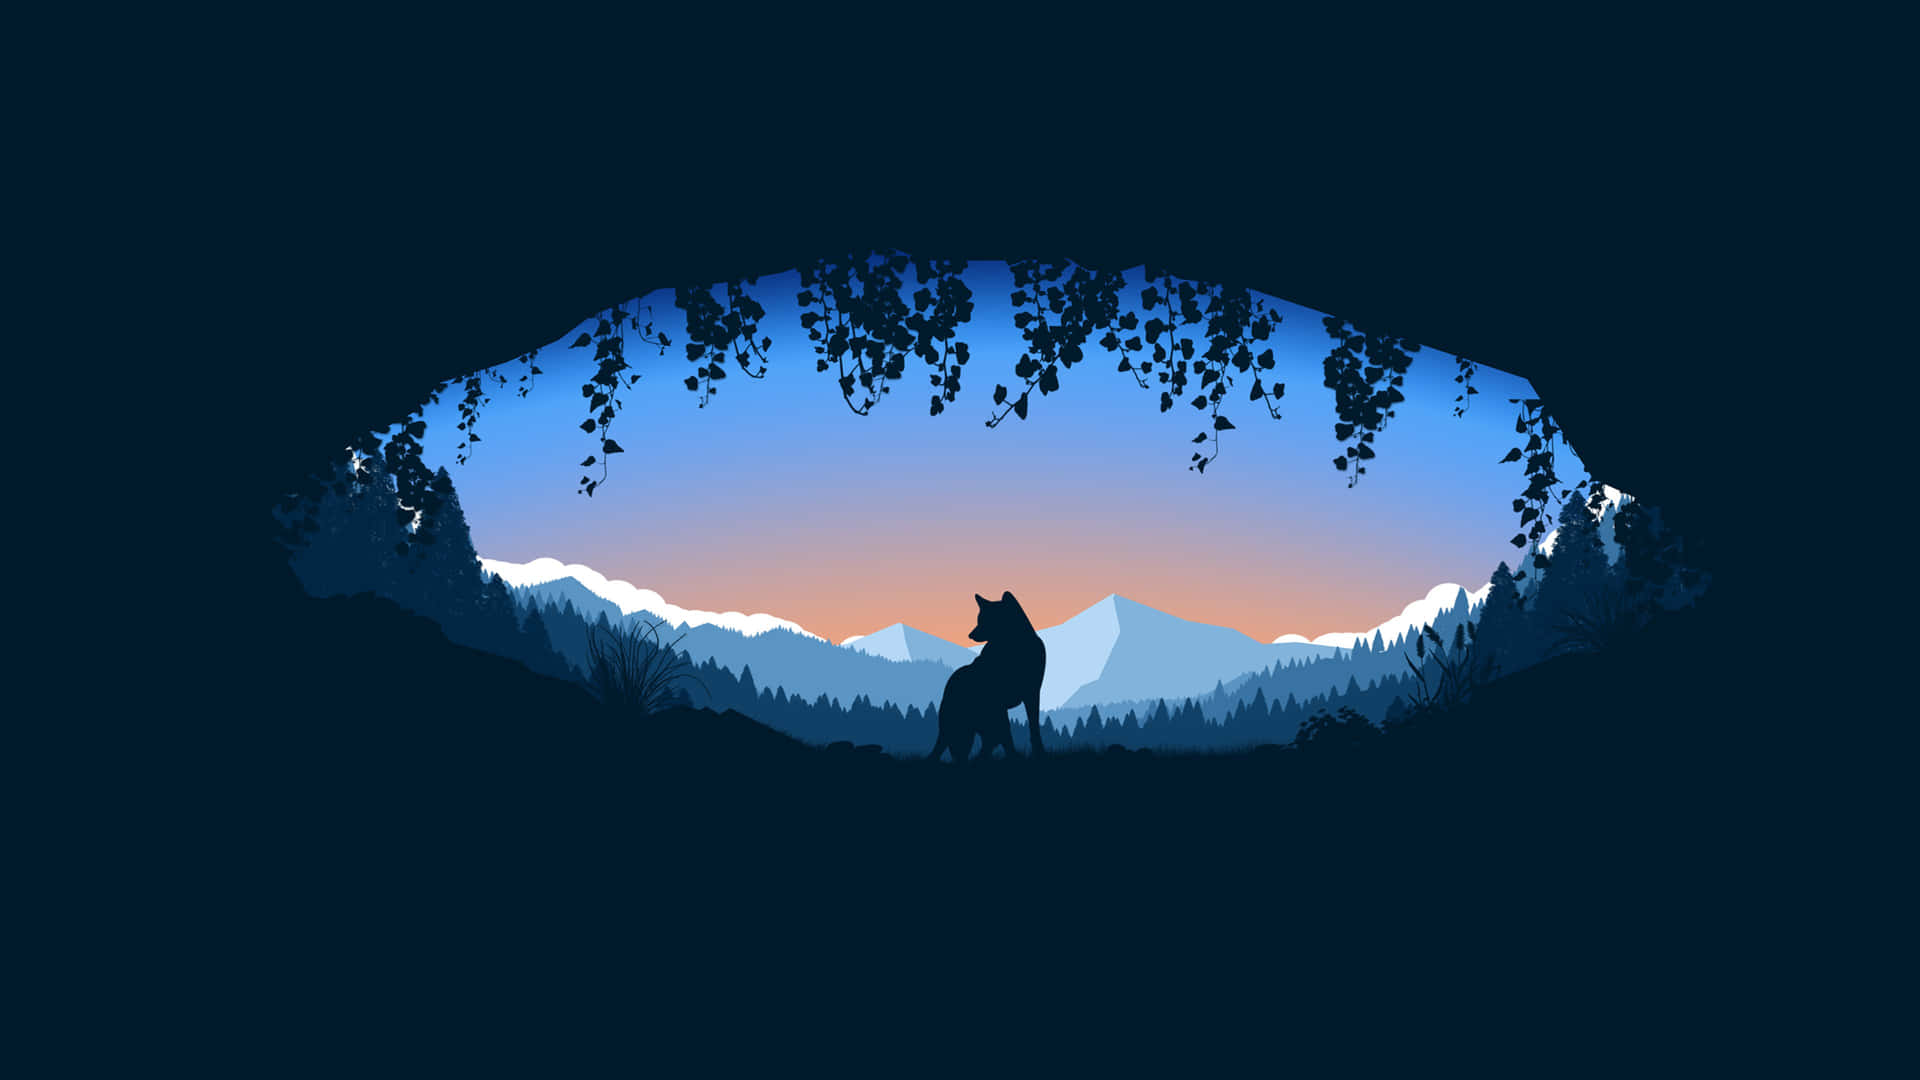 Einewolfssilhouette In Den Bergen Bei Sonnenuntergang. Wallpaper